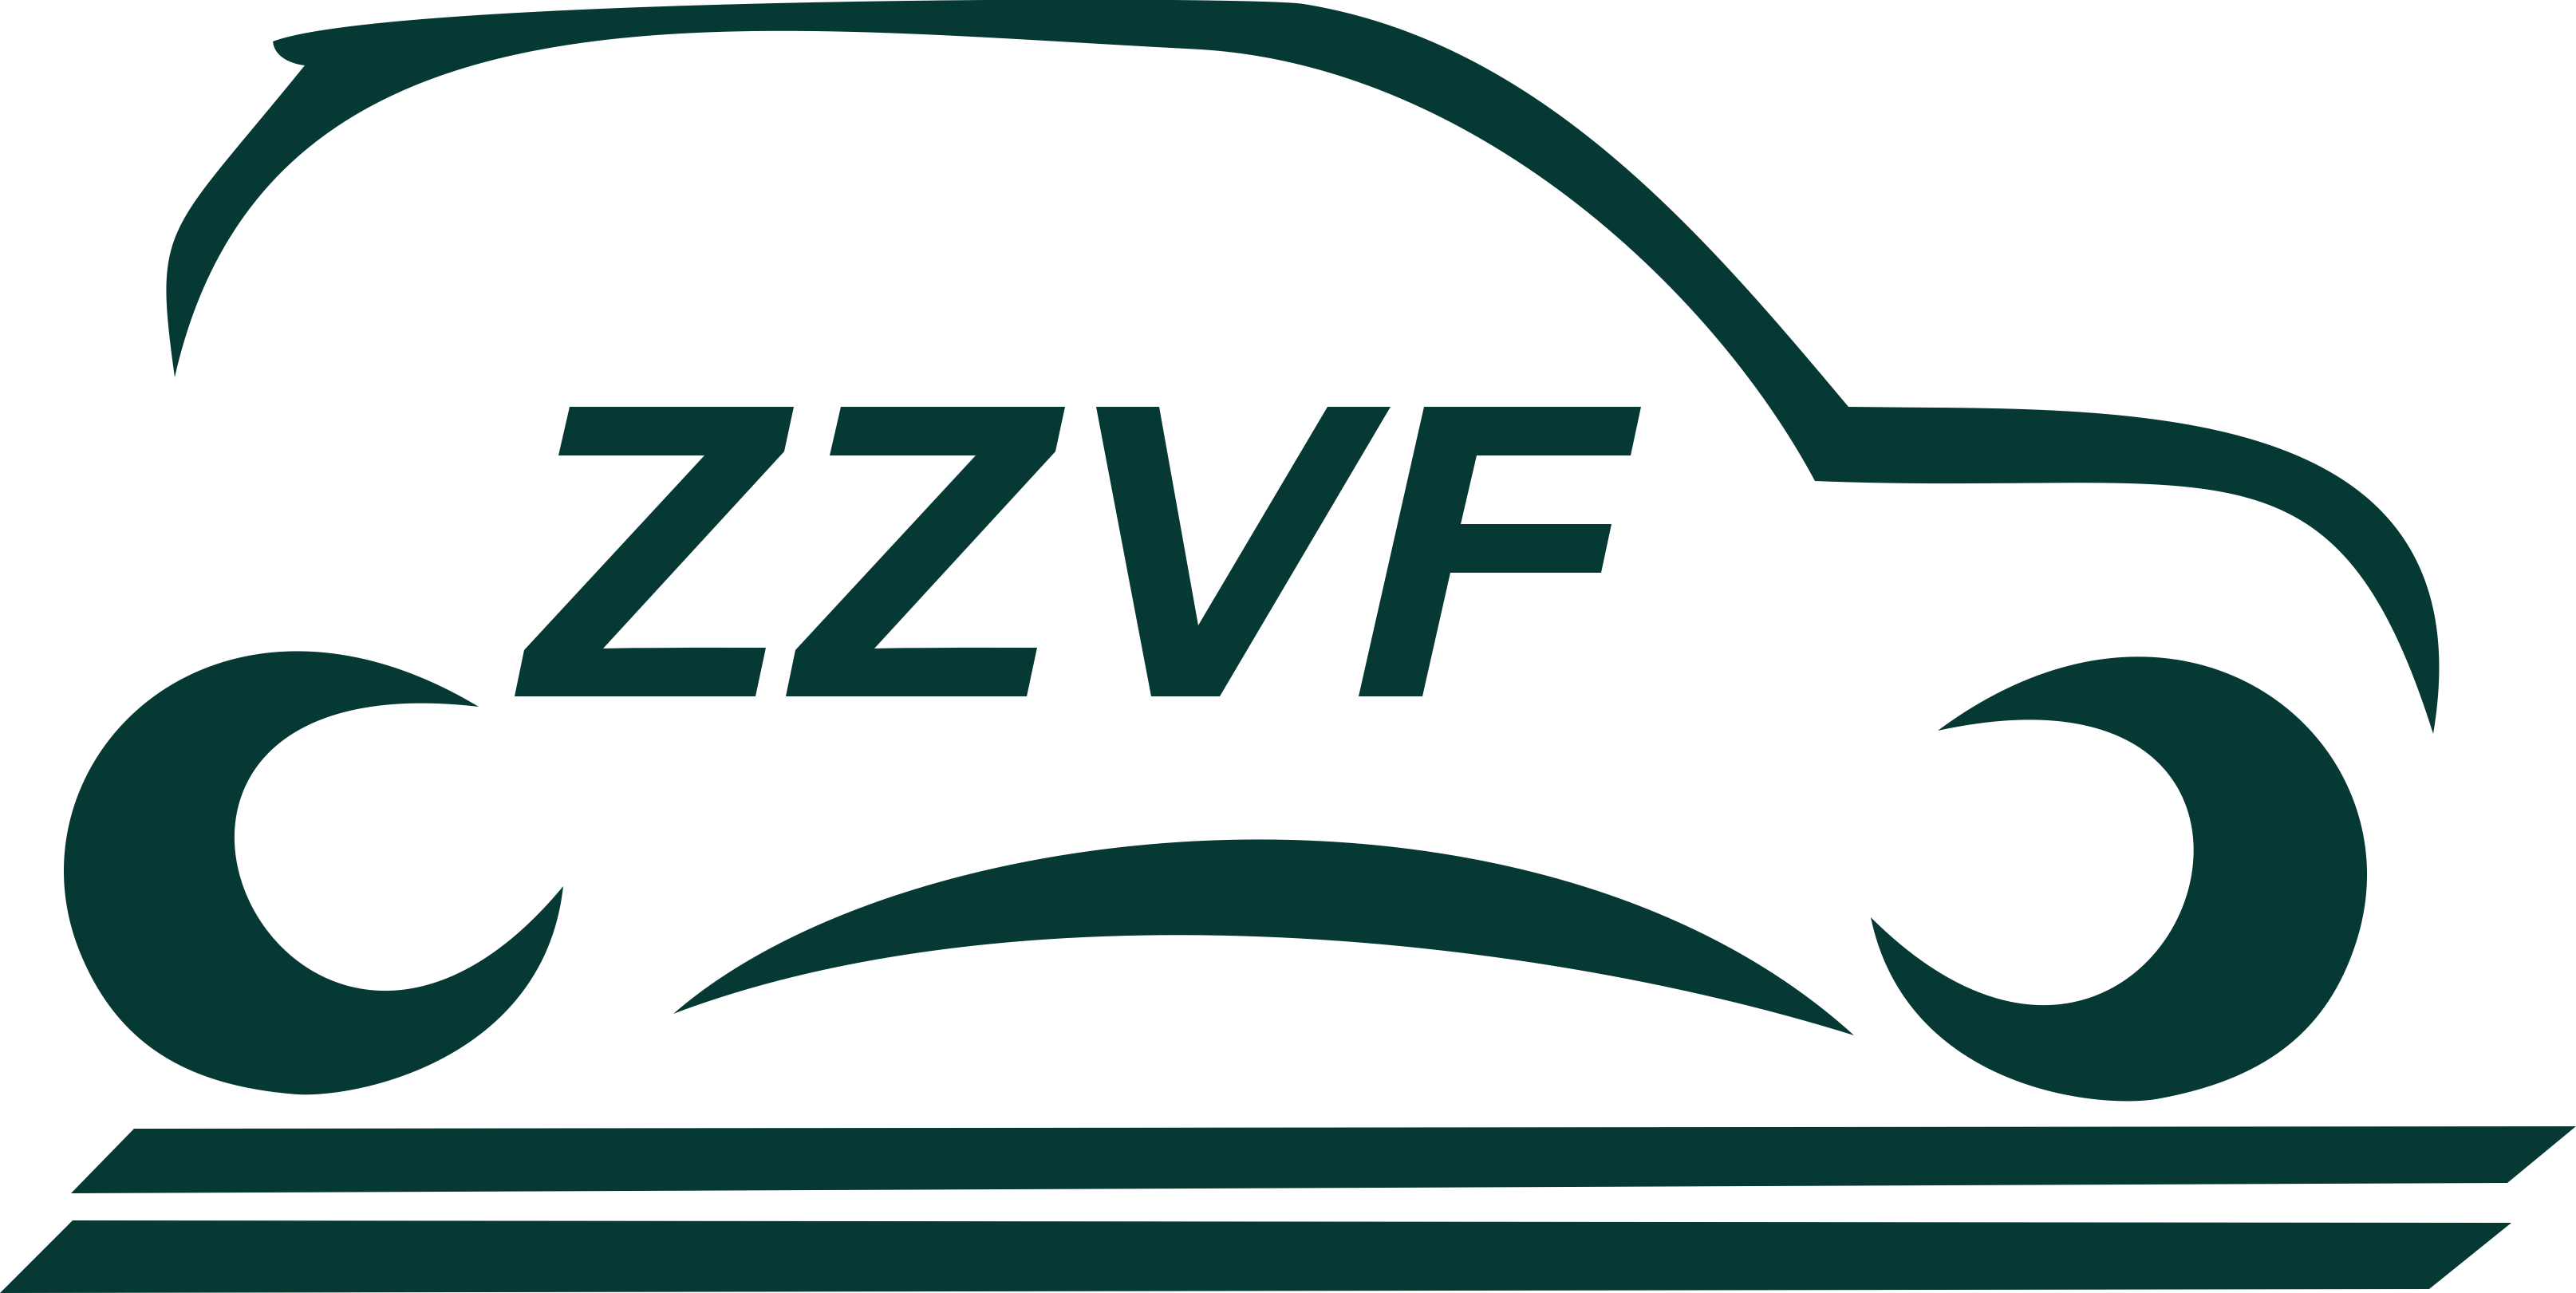 ZZVF Китай Тайвань Топливная система Производство запасных частей и узлов Стартеры ШРУСы Топливные насосы Подушки Привод Кронштейны ARUMO.RU 